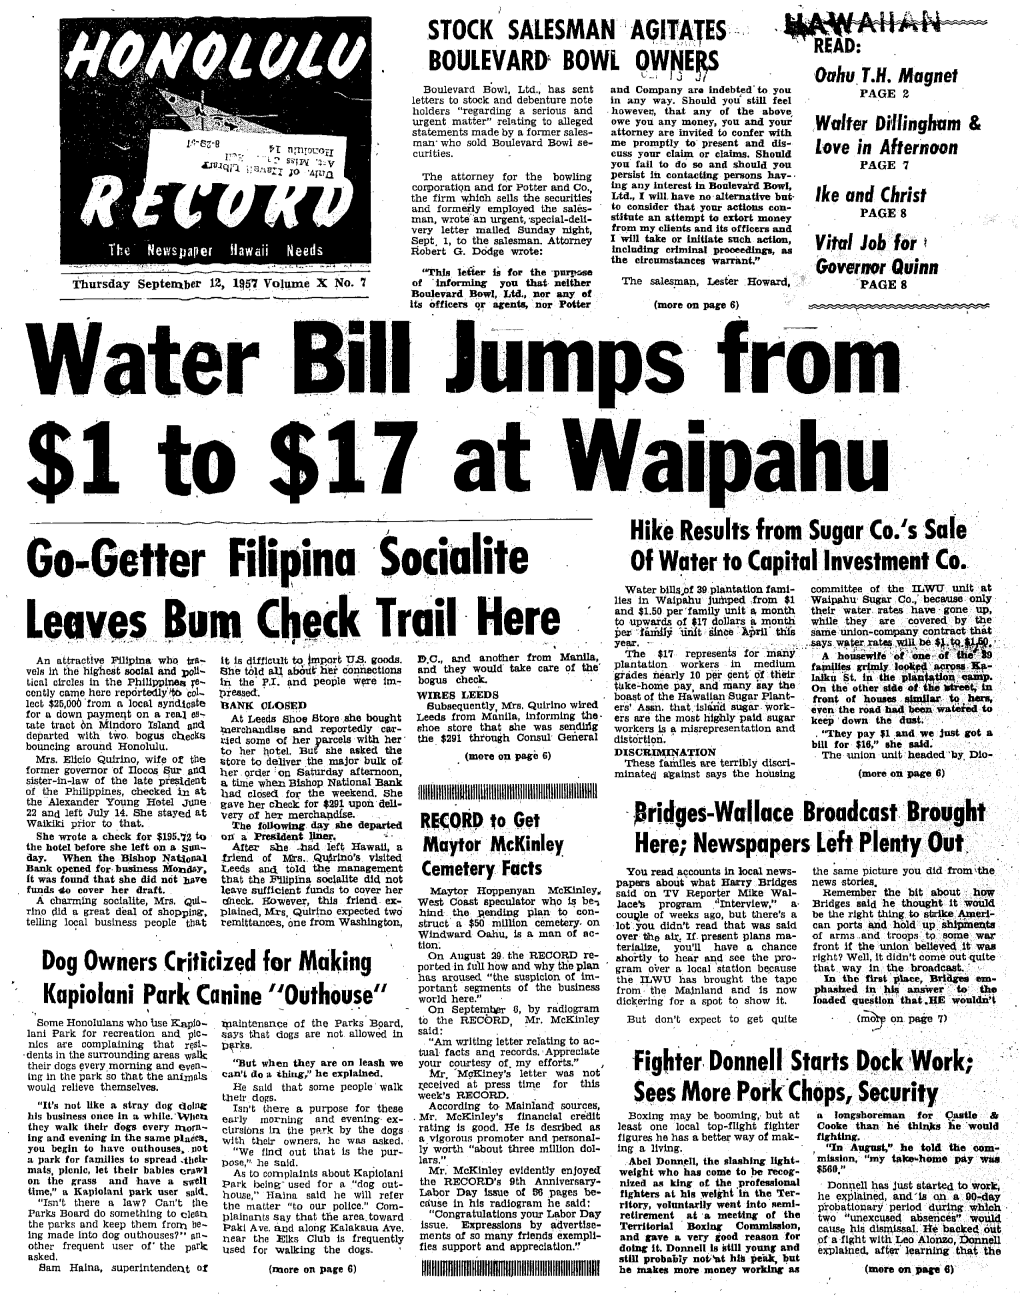 Water Bill Jumps $1 to $17 at Waipahu